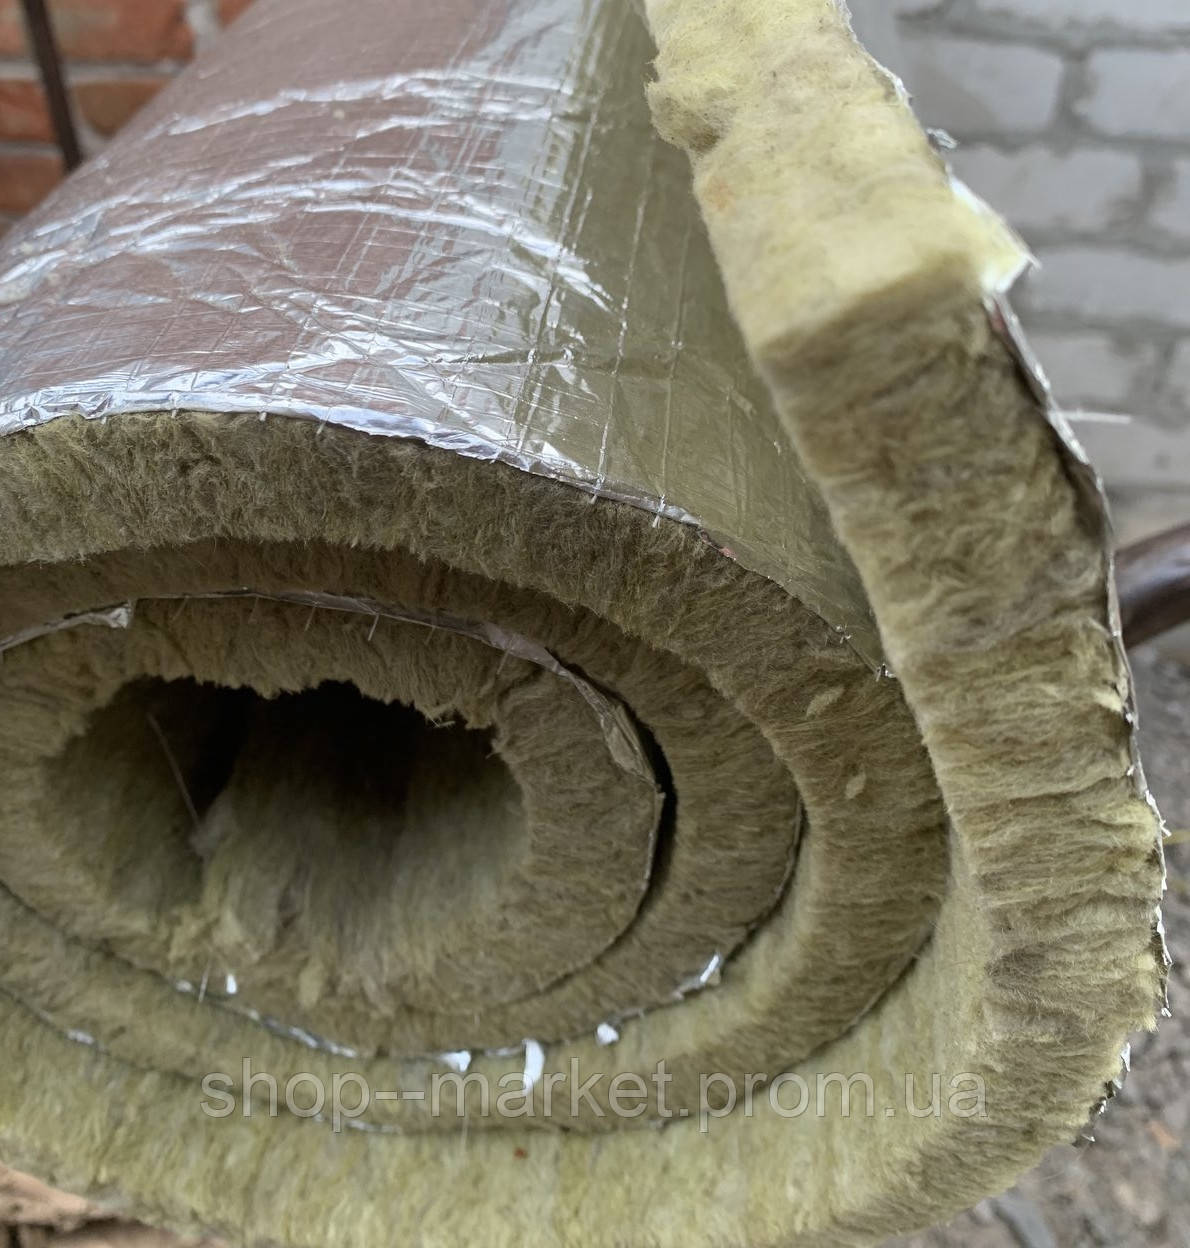 Каменная базальтовая фольгированная вата PAROC 20мм,НА МЕТРАЖ,Польша